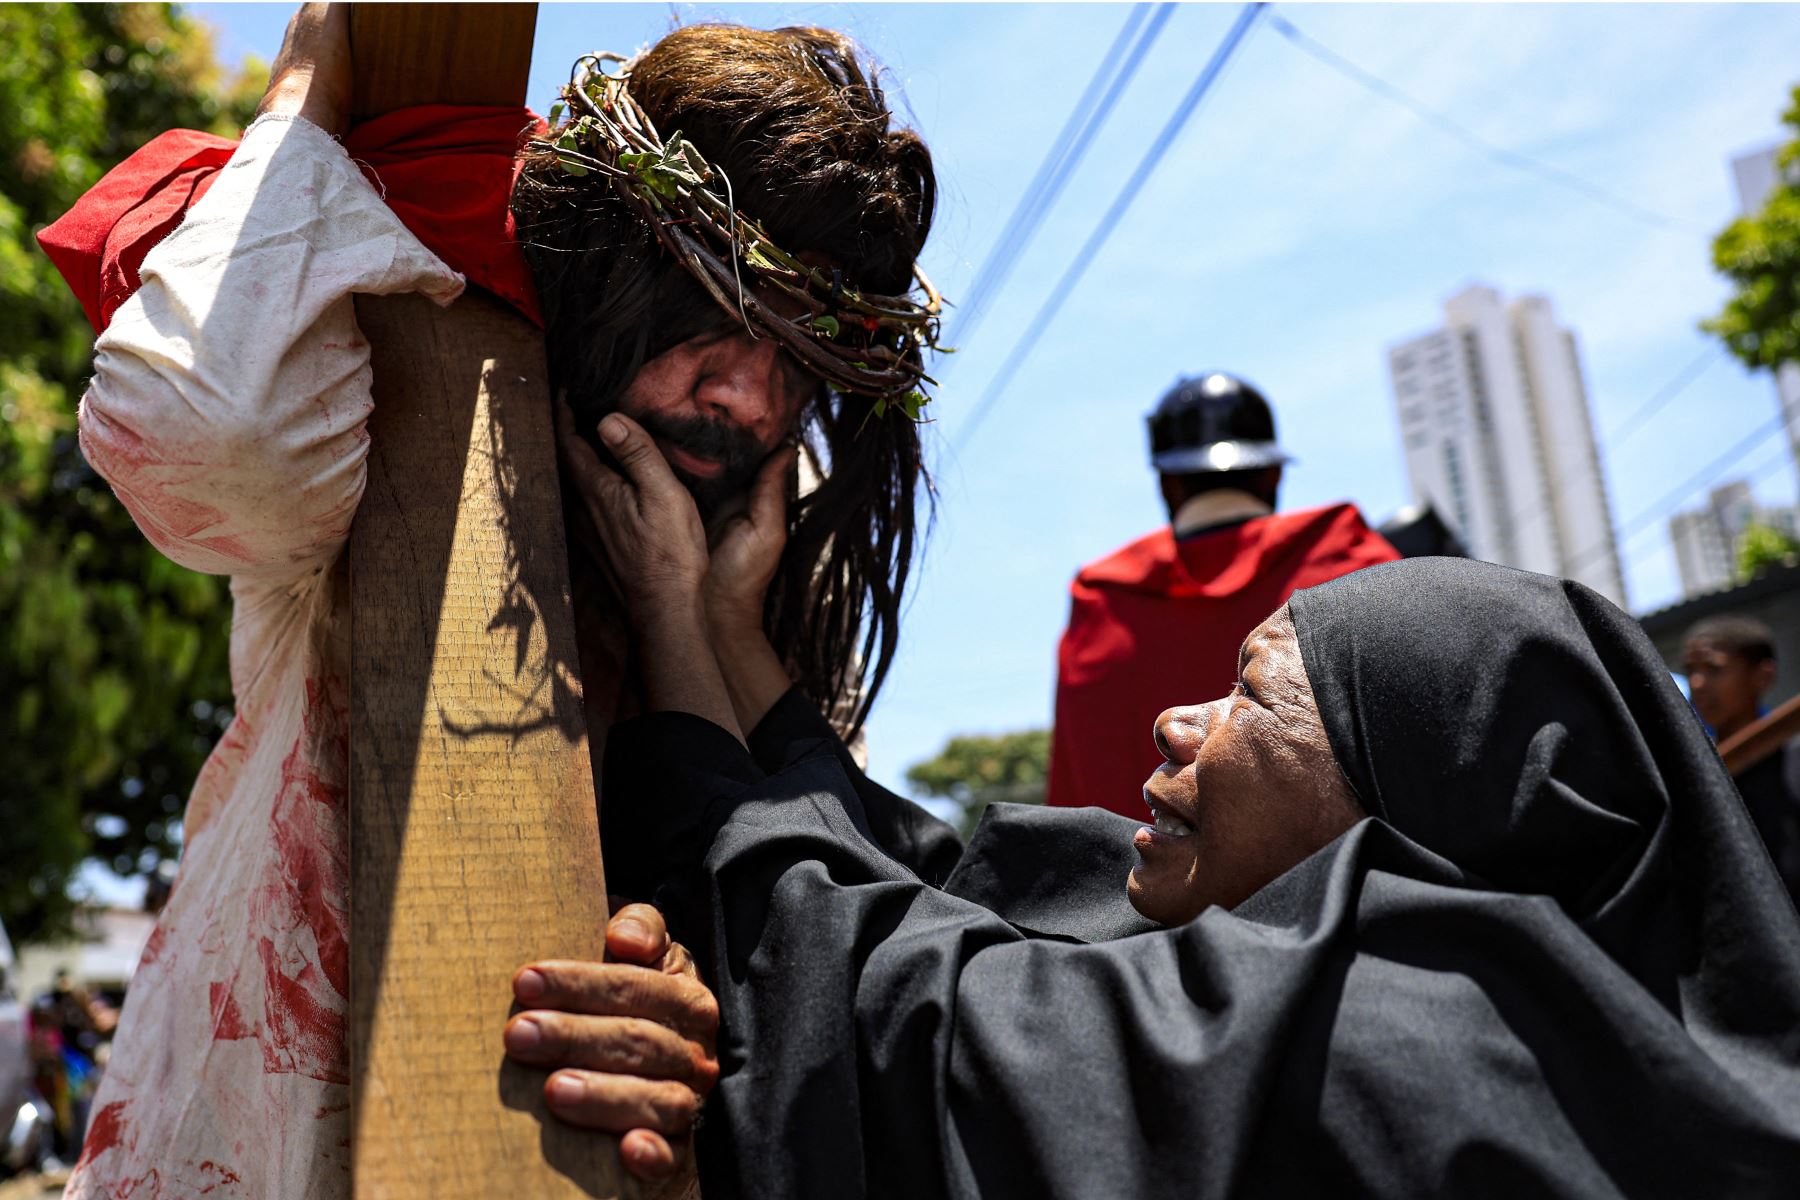 La gente recrea el Viacrucis (Vía Crucis) durante una procesión del Viernes Santo en la Ciudad de Panamá.
Foto: AFP